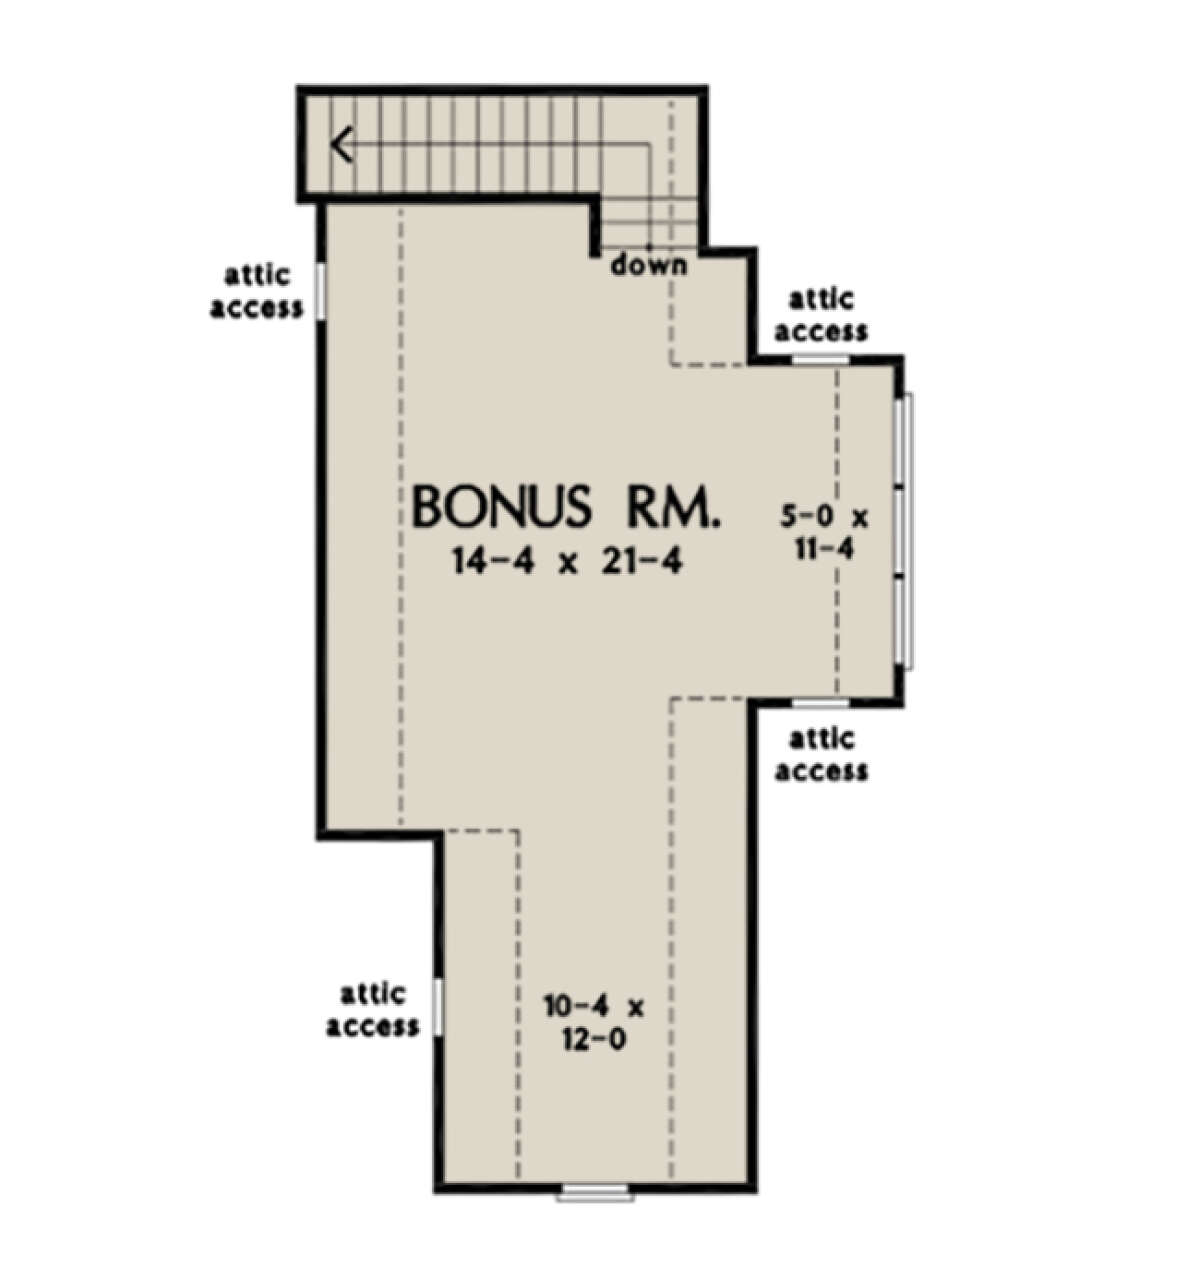 Bonus Room for House Plan #2865-00015